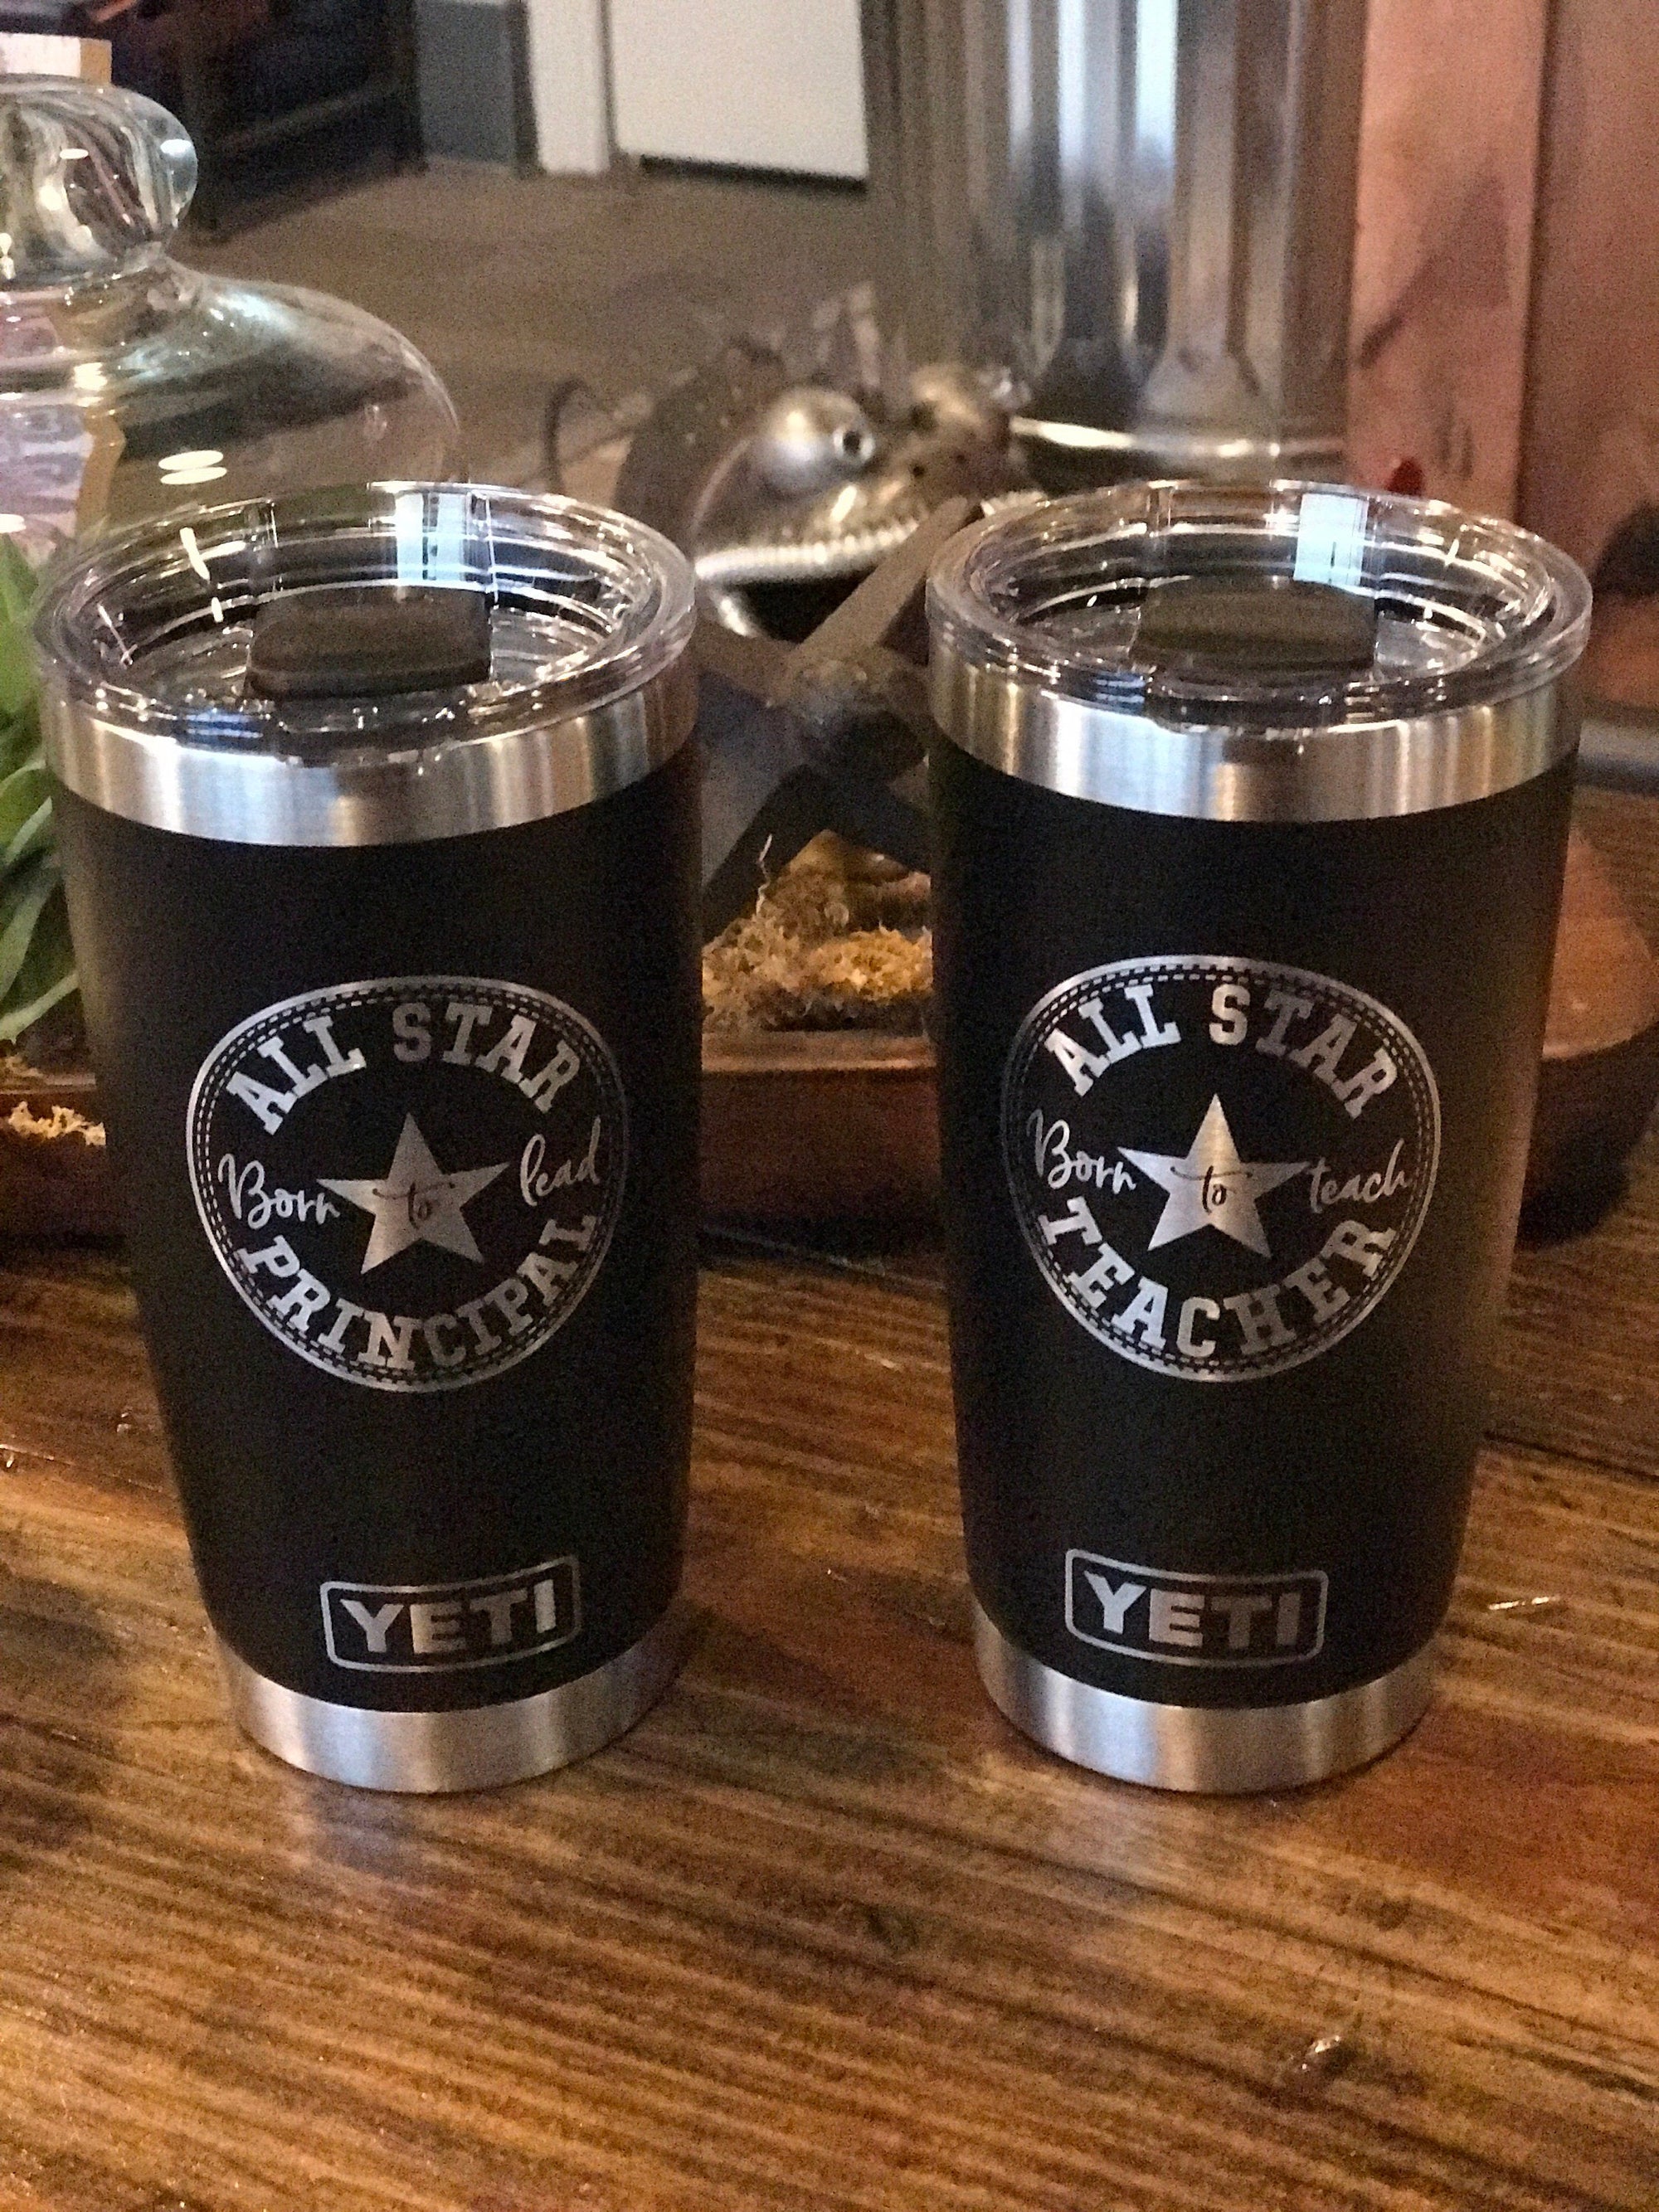 Personalized Yeti Rambler + a $299 Yeti Hopper Giveaway!